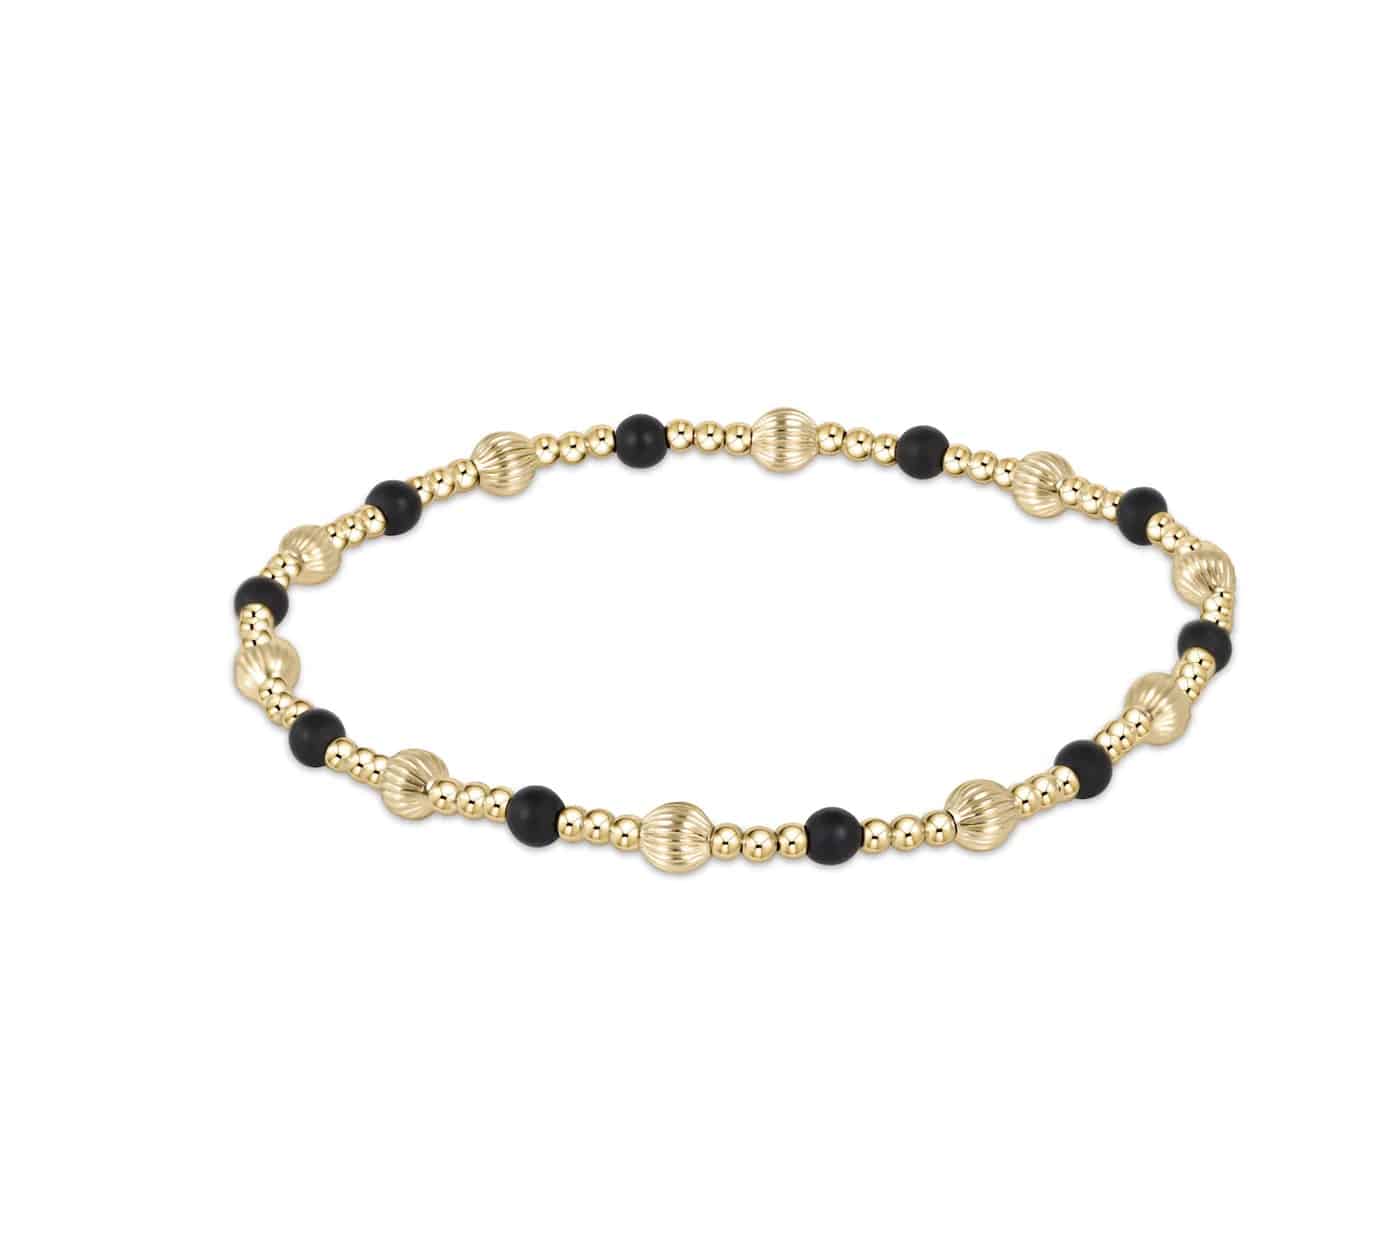 Enewton - dignity sincerity pattern 4mm bead bracelet - matte onyx - Findlay Rowe Designs